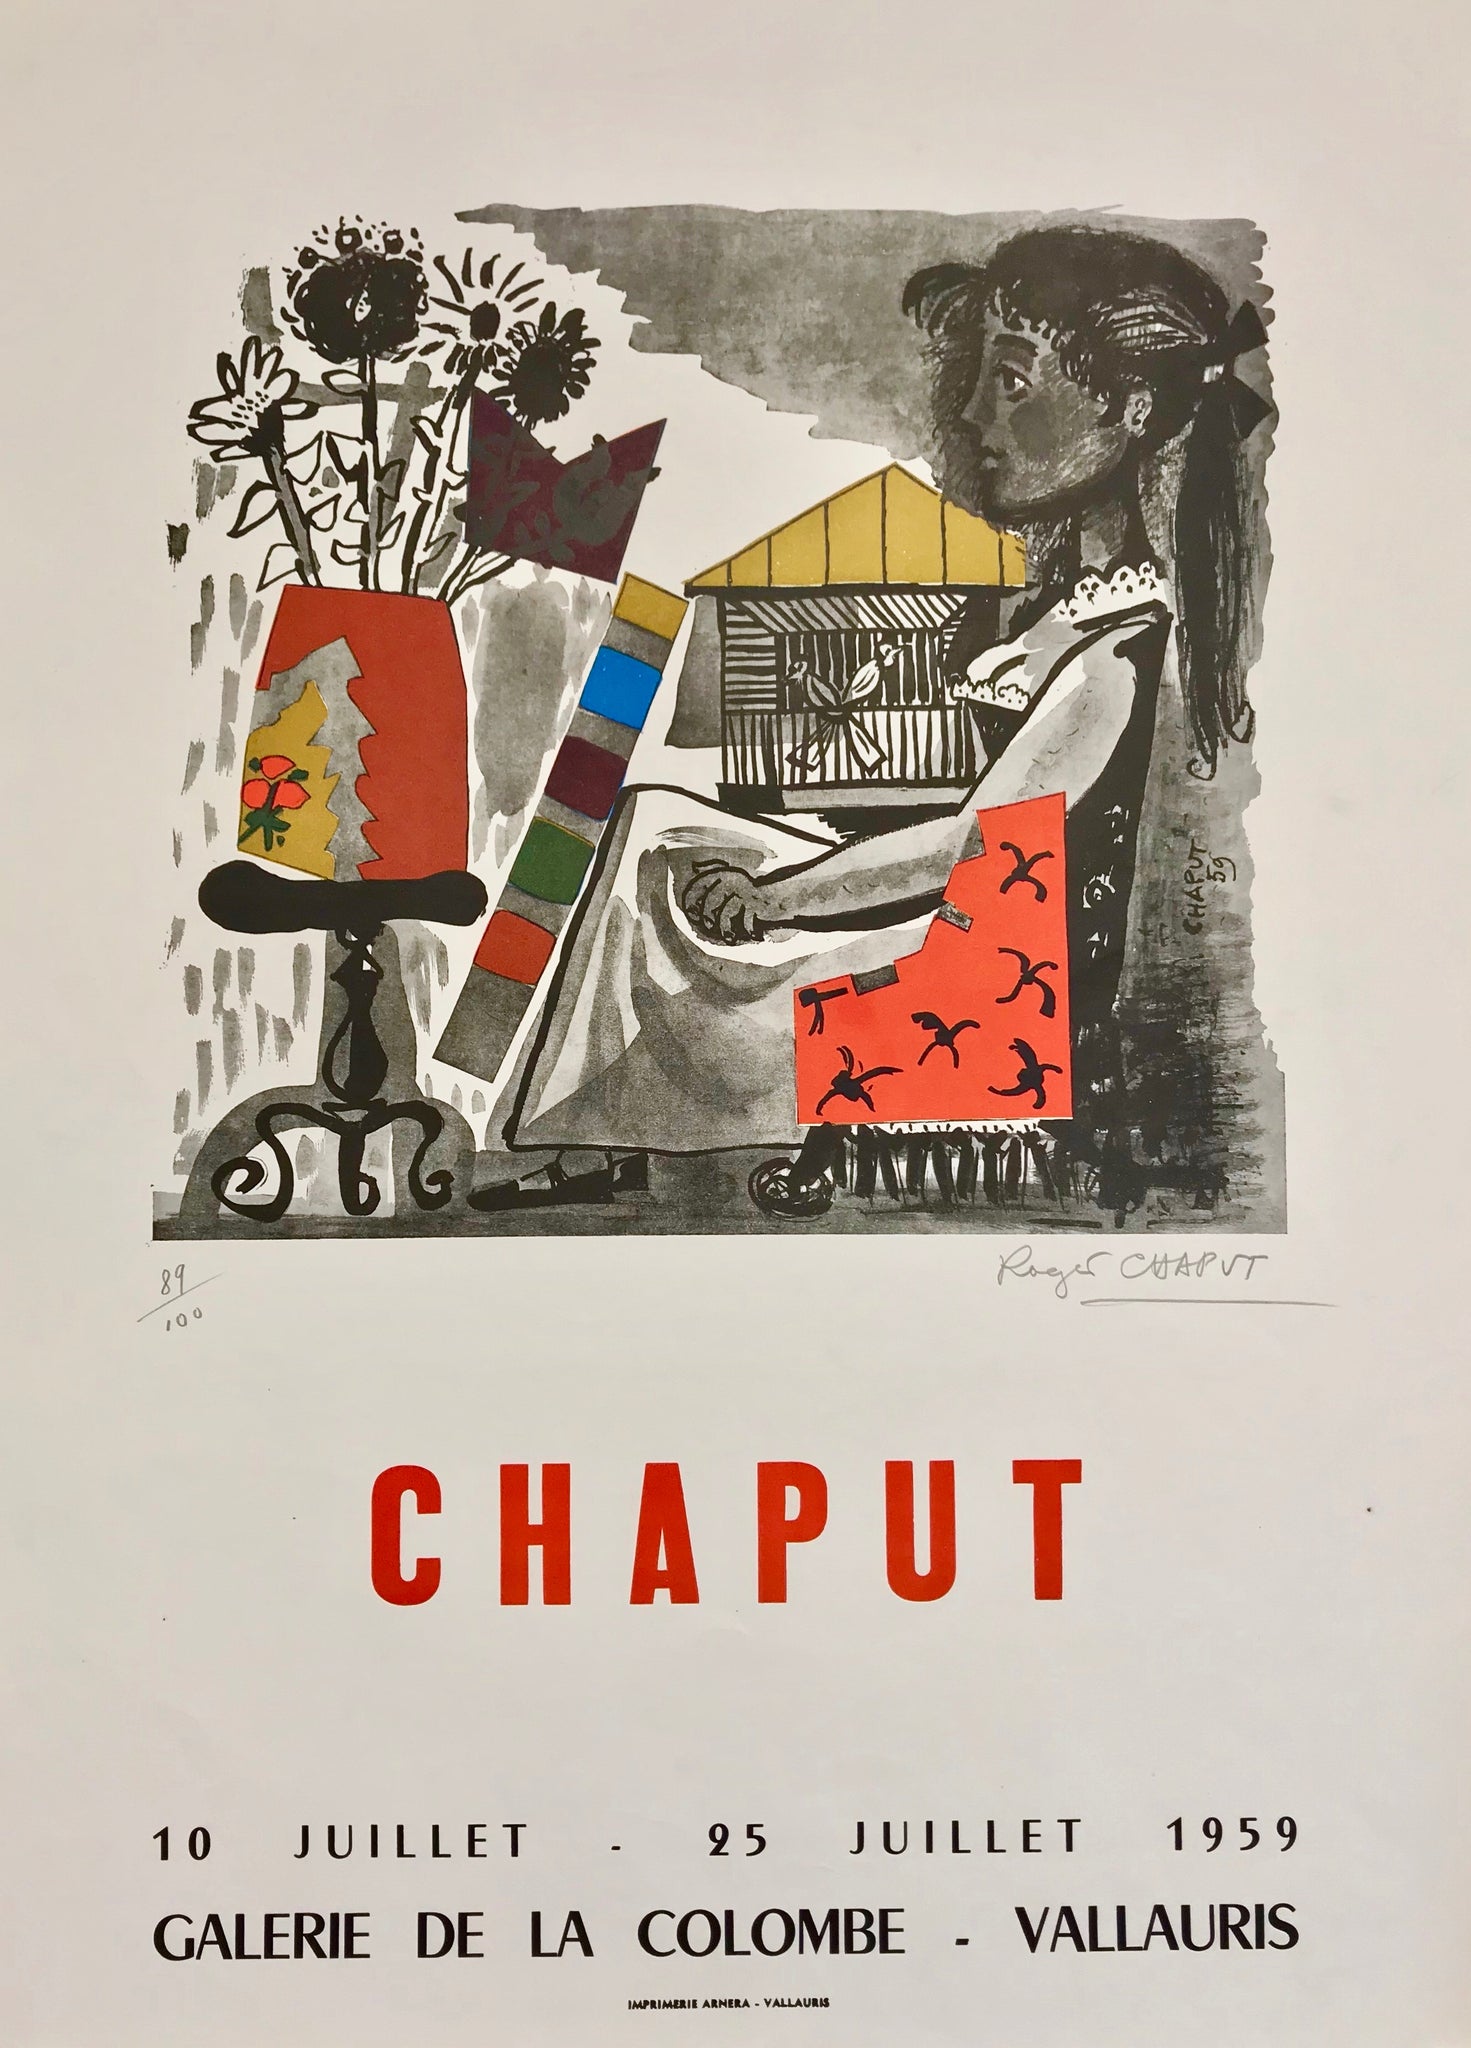 Affiche lithographique originale réalisée pour l'exposition sur Roger Chaput  à la galerie de la colombe, Vallauris.  Du 10 au 25 Juillet 1959  L'affiche est numérotée et signée par l'artiste au crayon, 89/100.